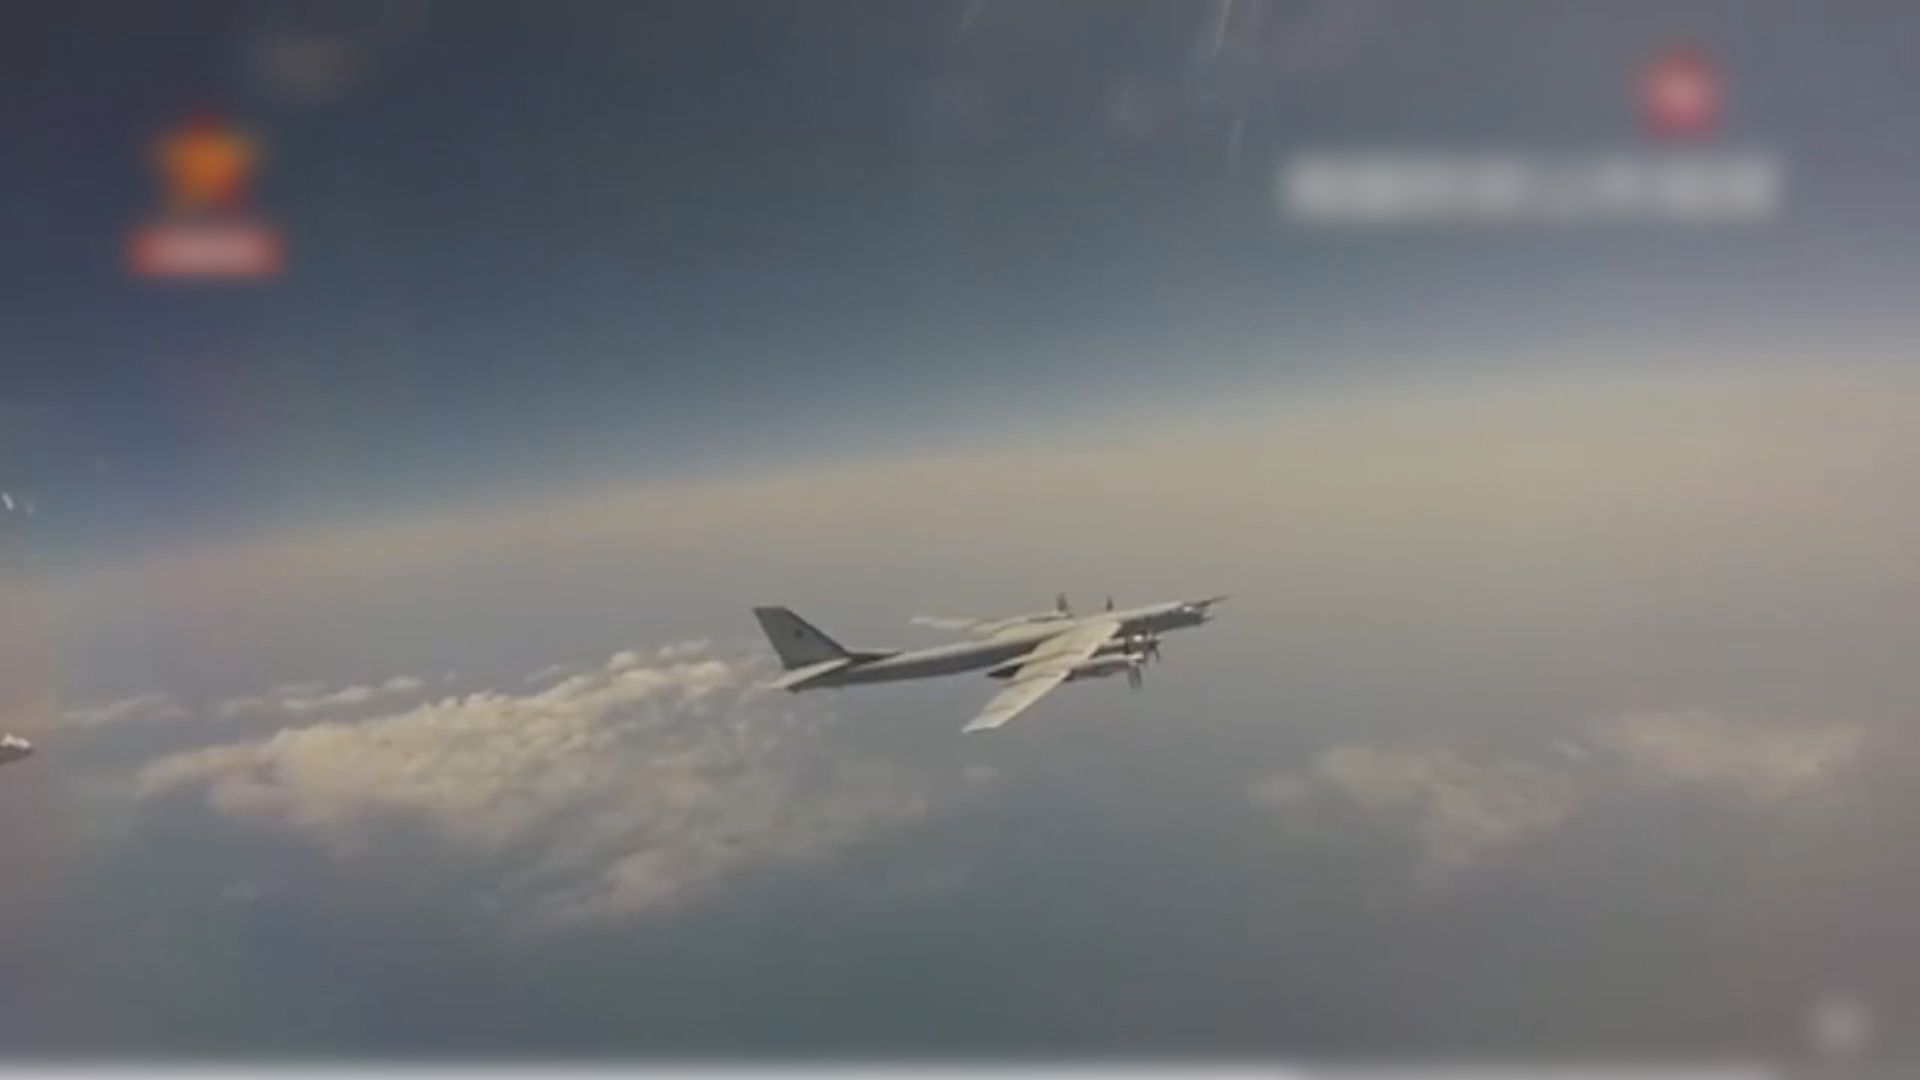 日本批評中俄戰機飛近日本領海行為挑釁